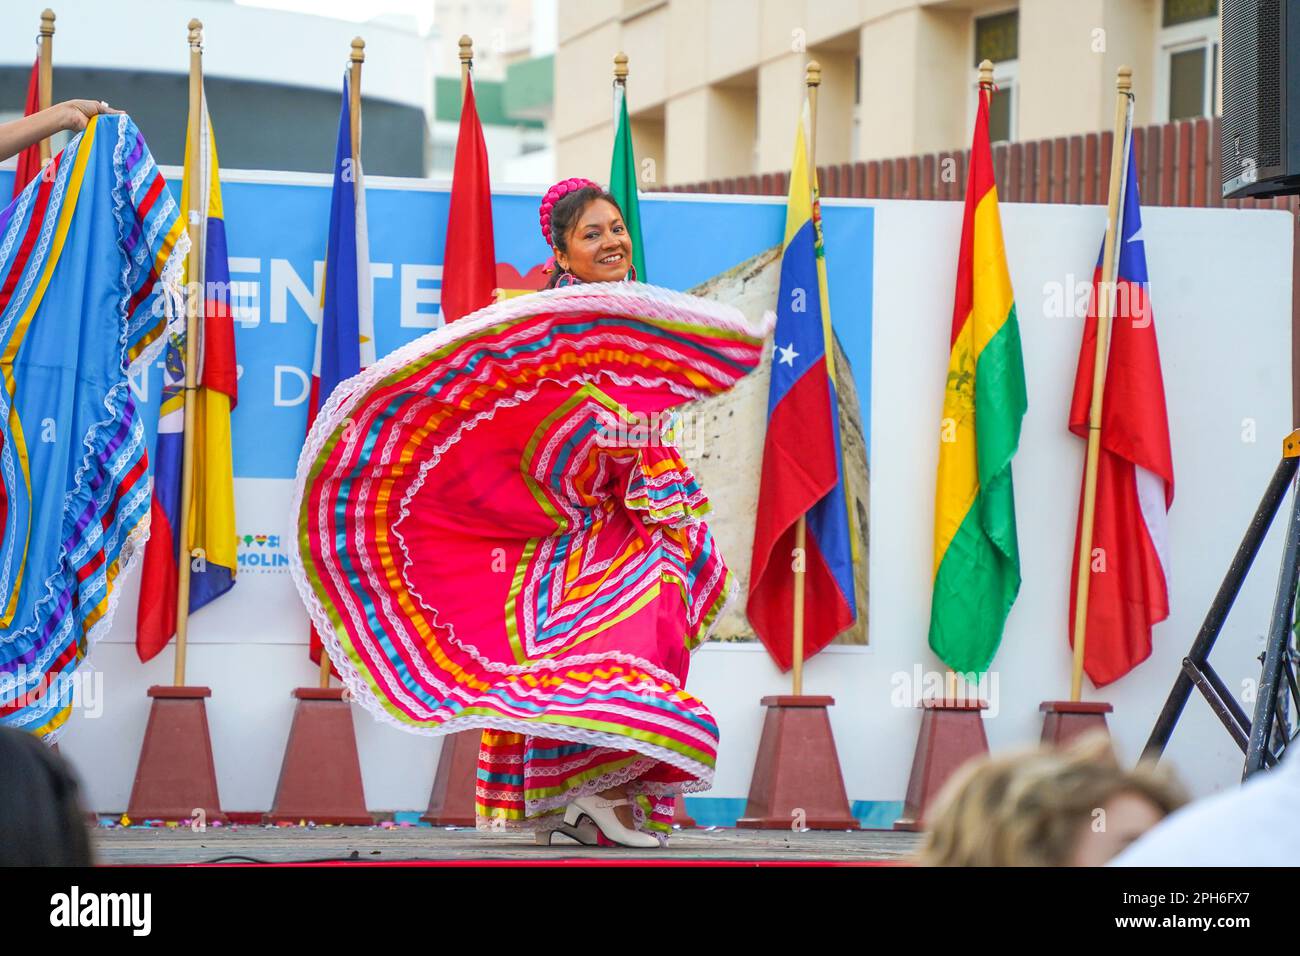 Torremolinos. Frau, die traditionellen südamerikanischen Tanz aufführt, Dia del Residente, multikulturelle Veranstaltung, Costa del Sol, Spanien. Stockfoto